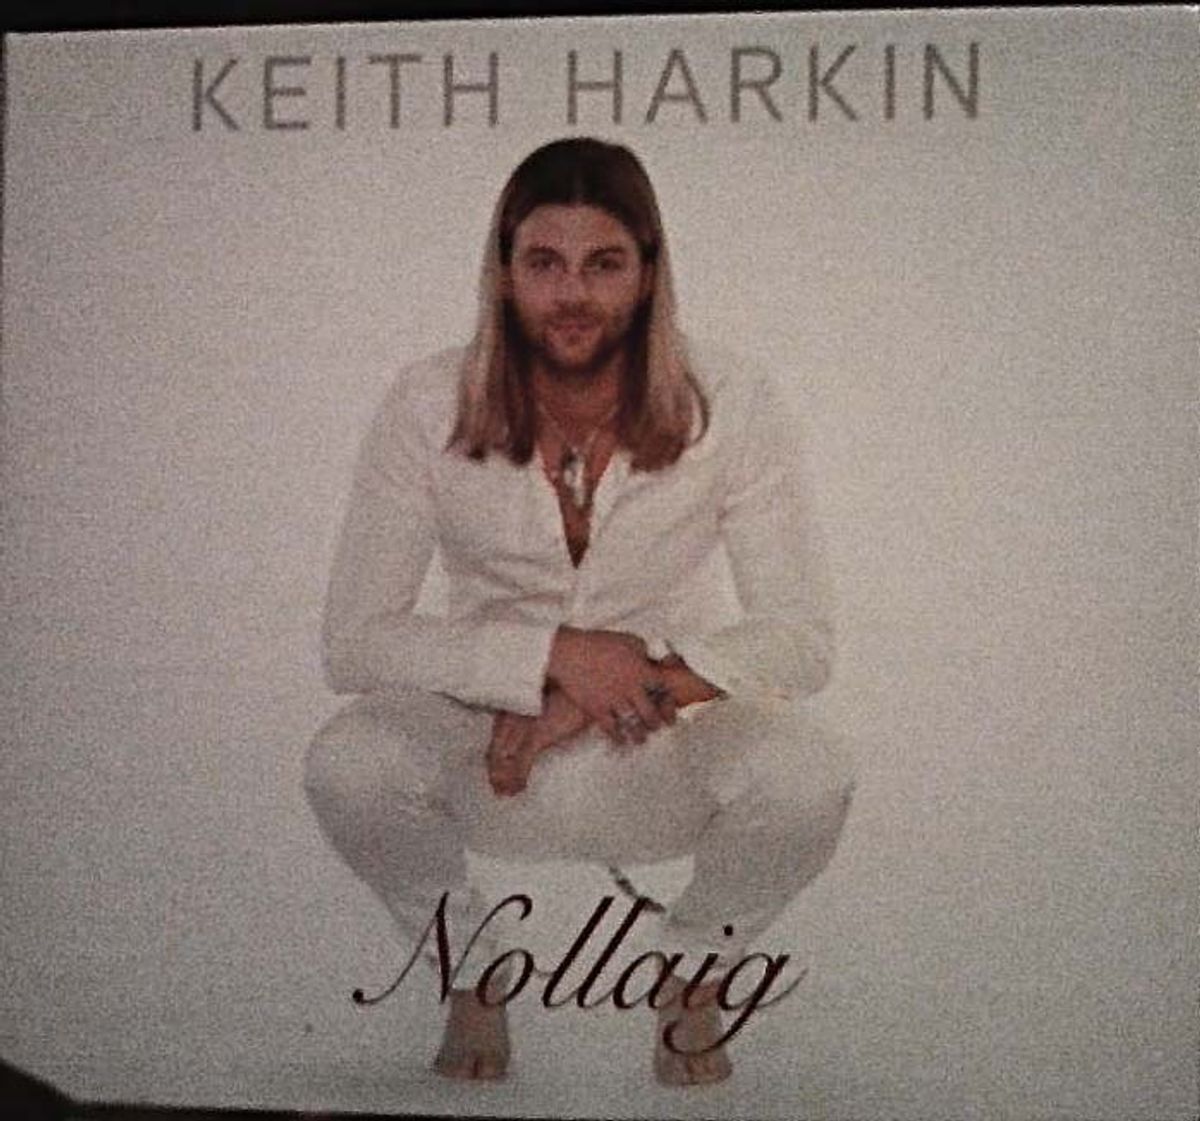 Album Review: Keith Harkin's "Nollaig"